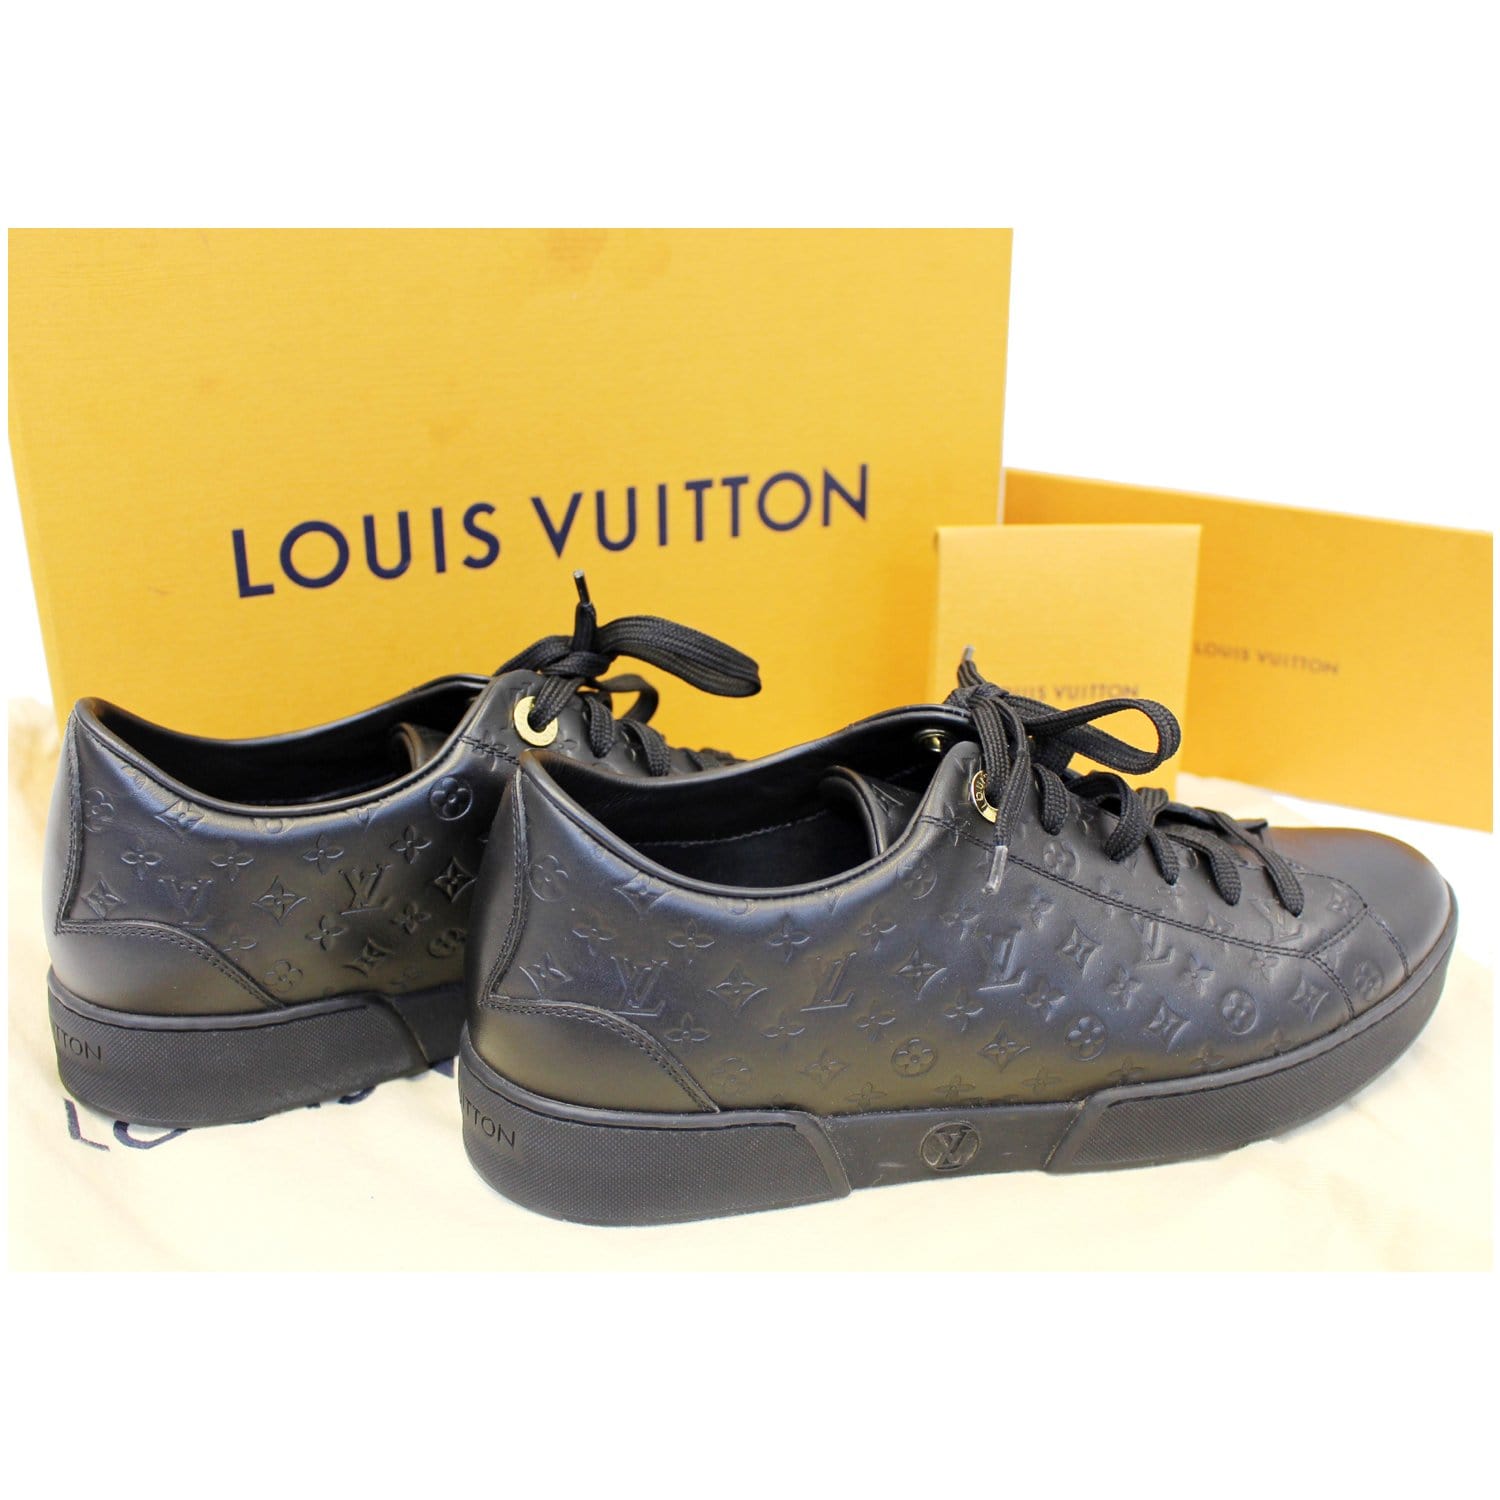 Túi Louis Vuitton Size to rep 1:1 chính hãng màu nâu dây xanh giá tốt